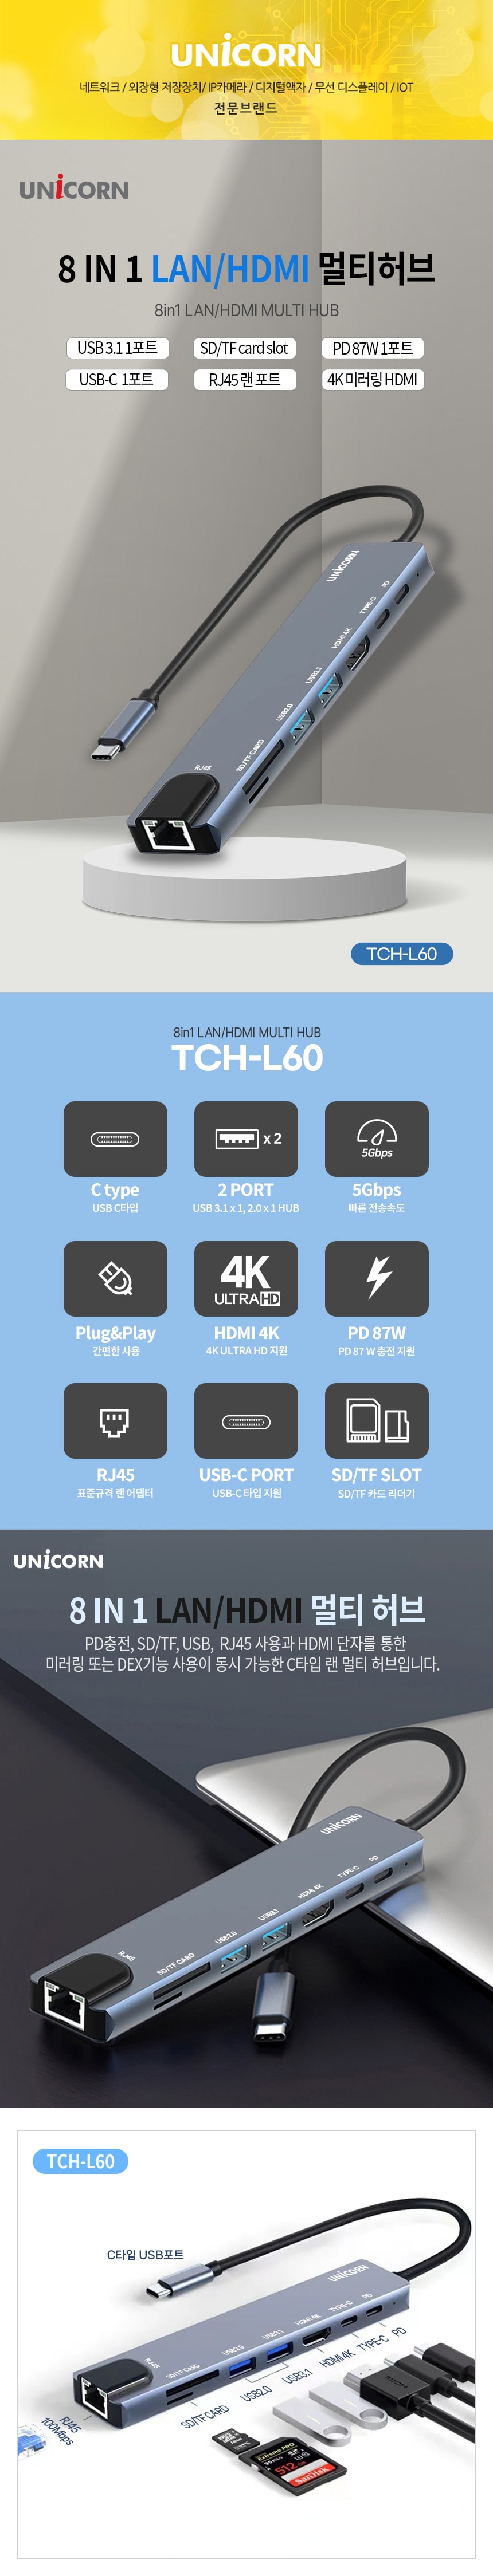 TCH-L60-1.jpg